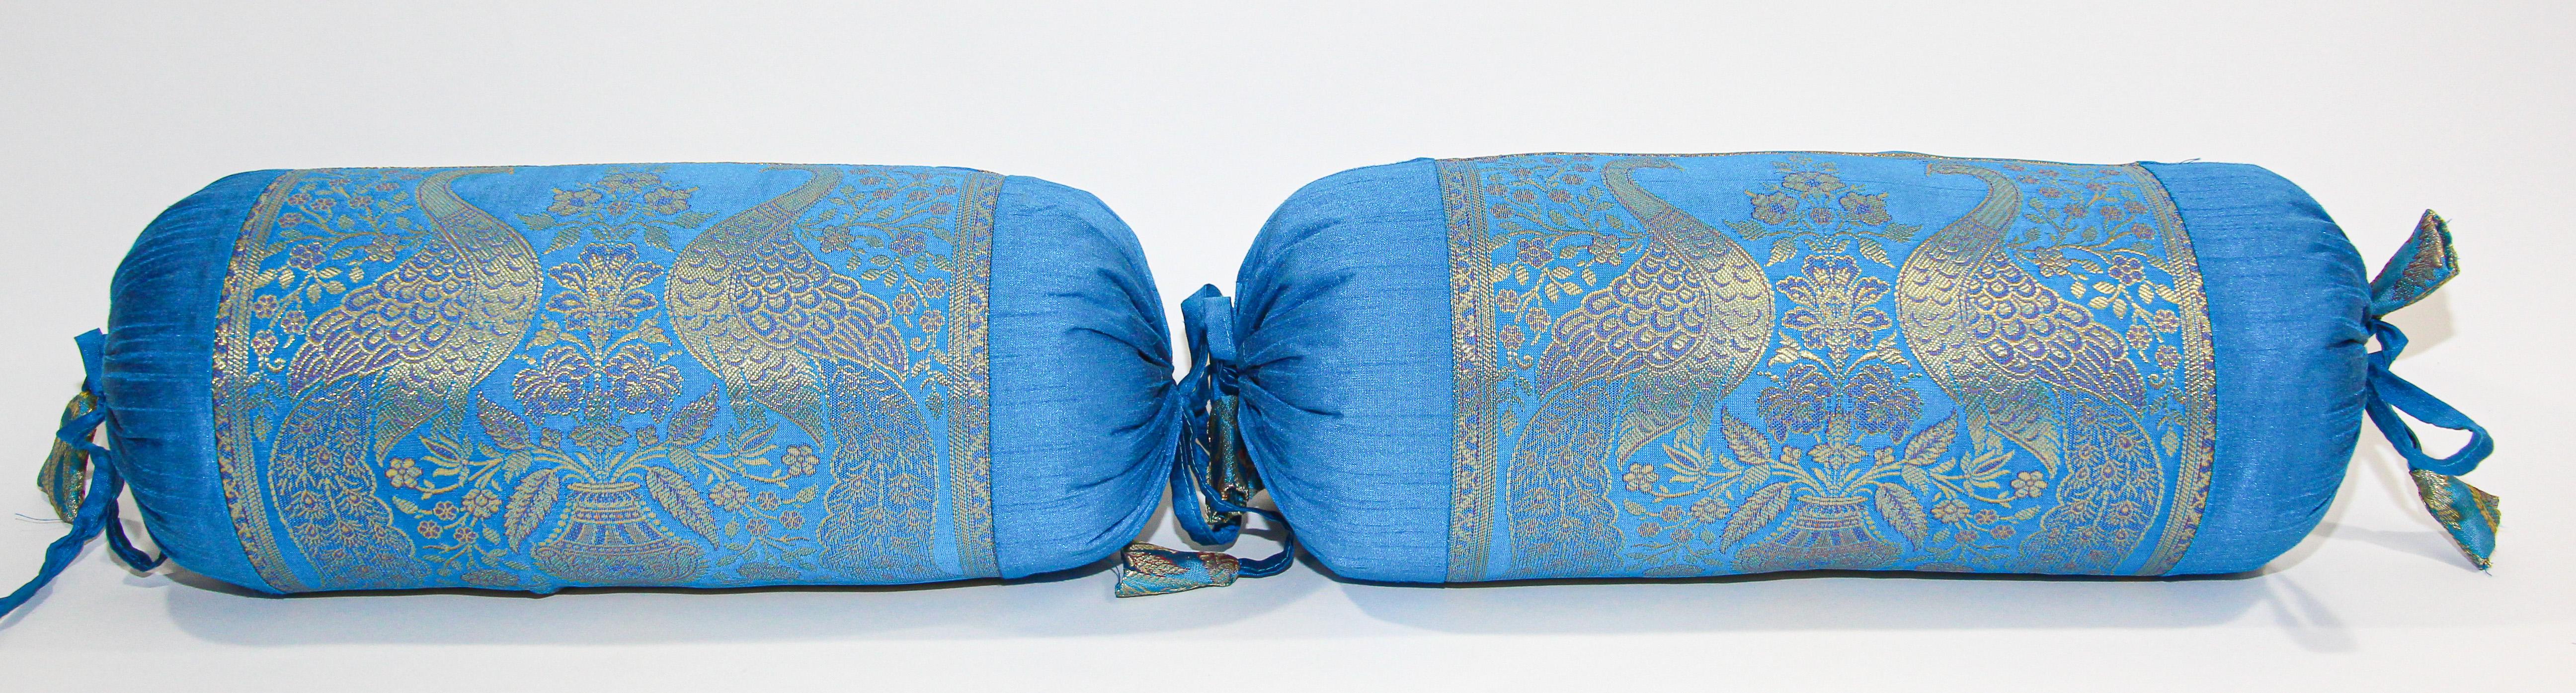 Coussins de traversin en soie Brocade Vintage fabriqués à partir d'un tissu de sari en soie dans des couleurs bleu turquoise et or.
Ensemble de deux oreillers indiens de style moghol avec un motif de paon majestueux devant chaque oreiller lombaire